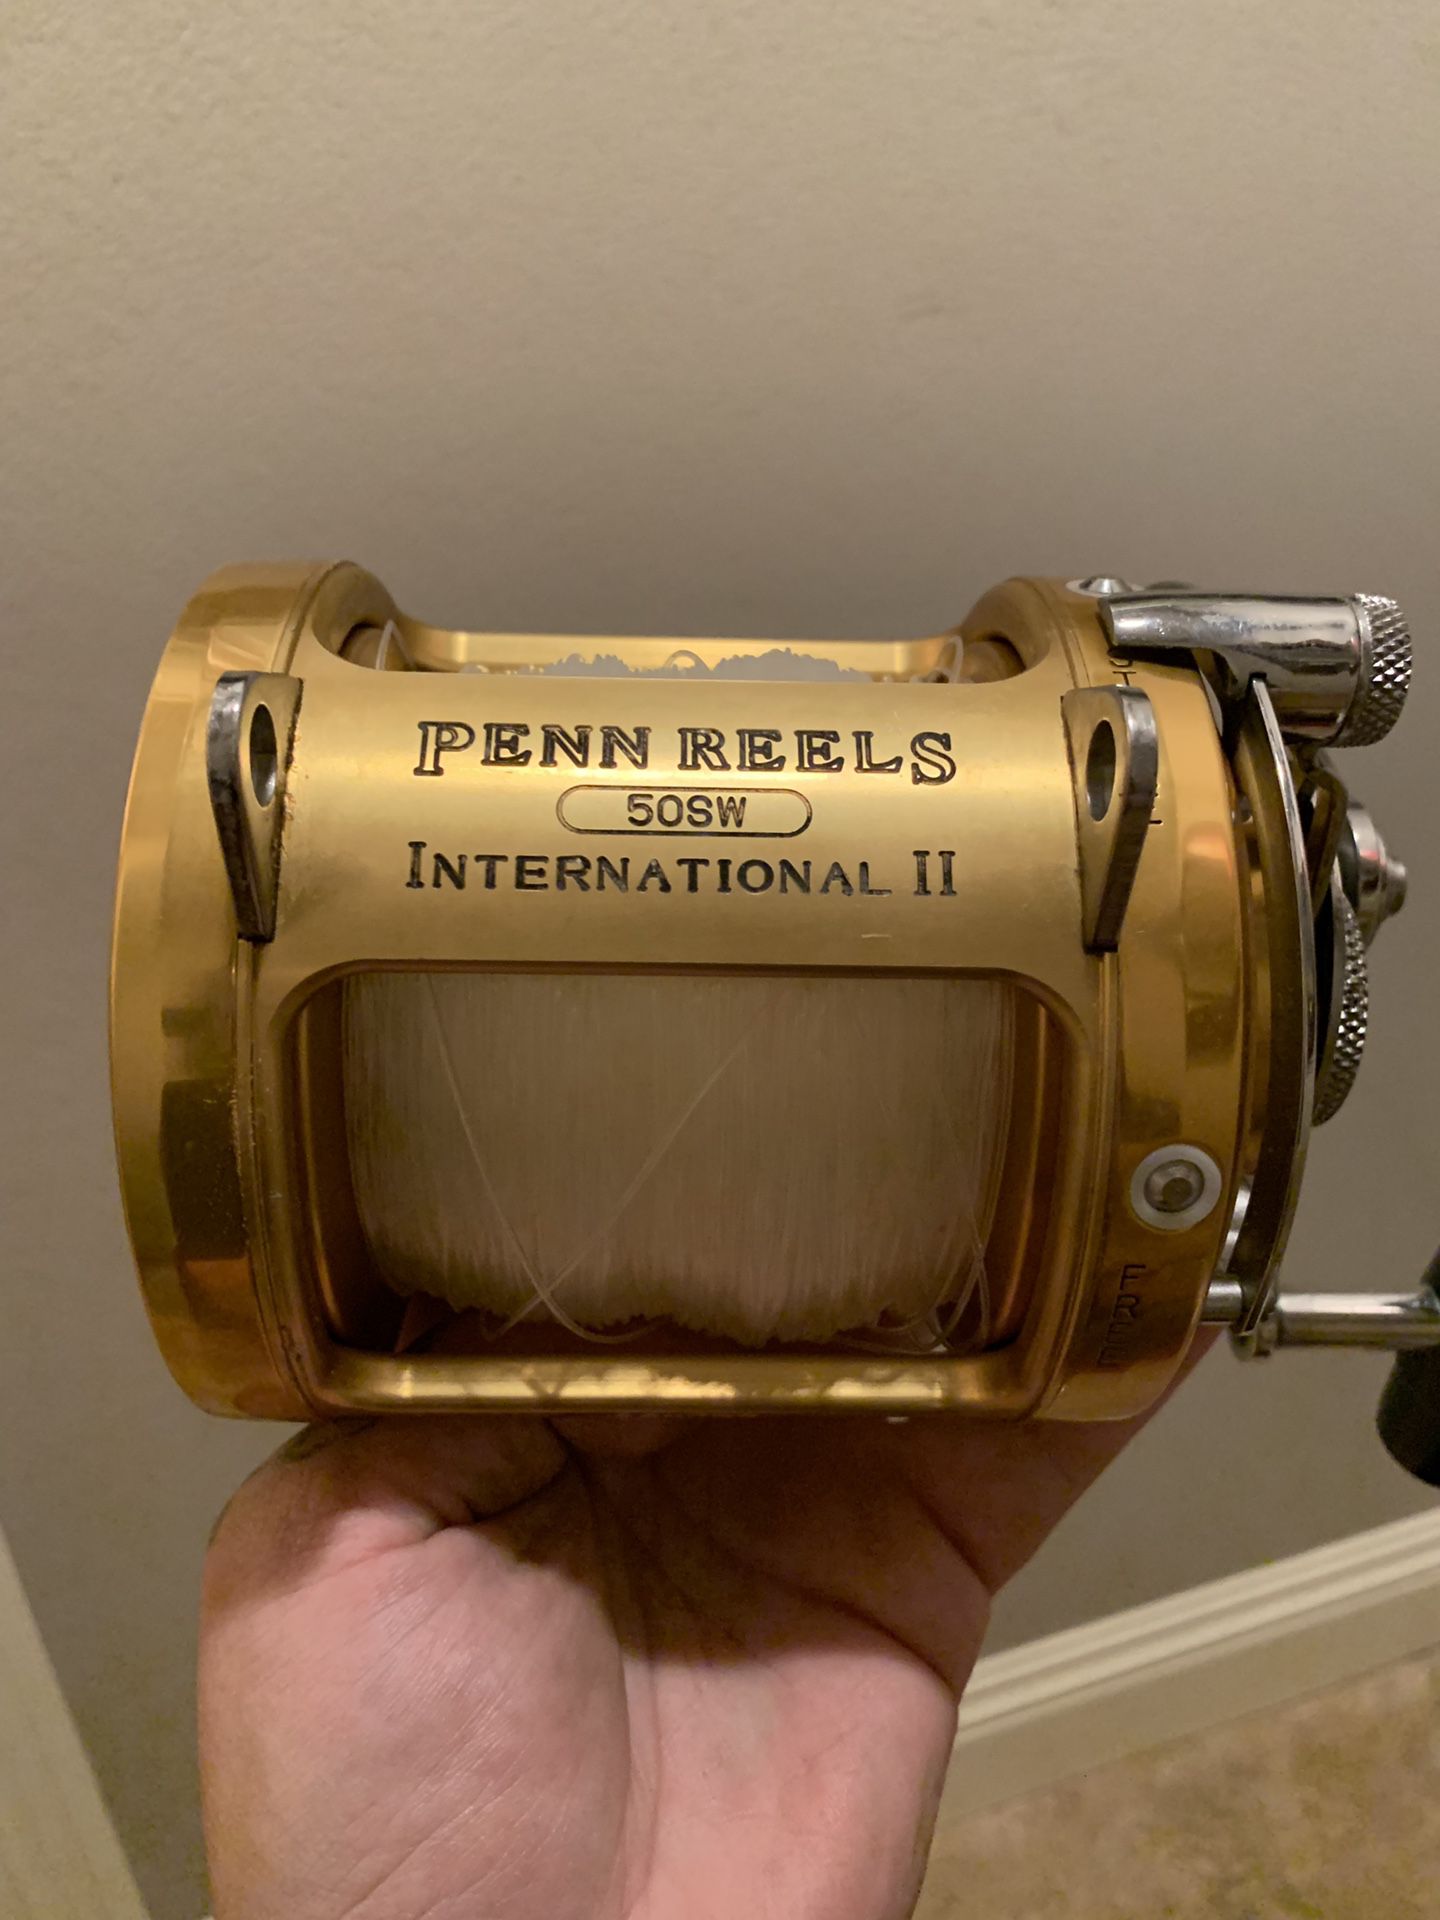 Penn reels international II 50SW